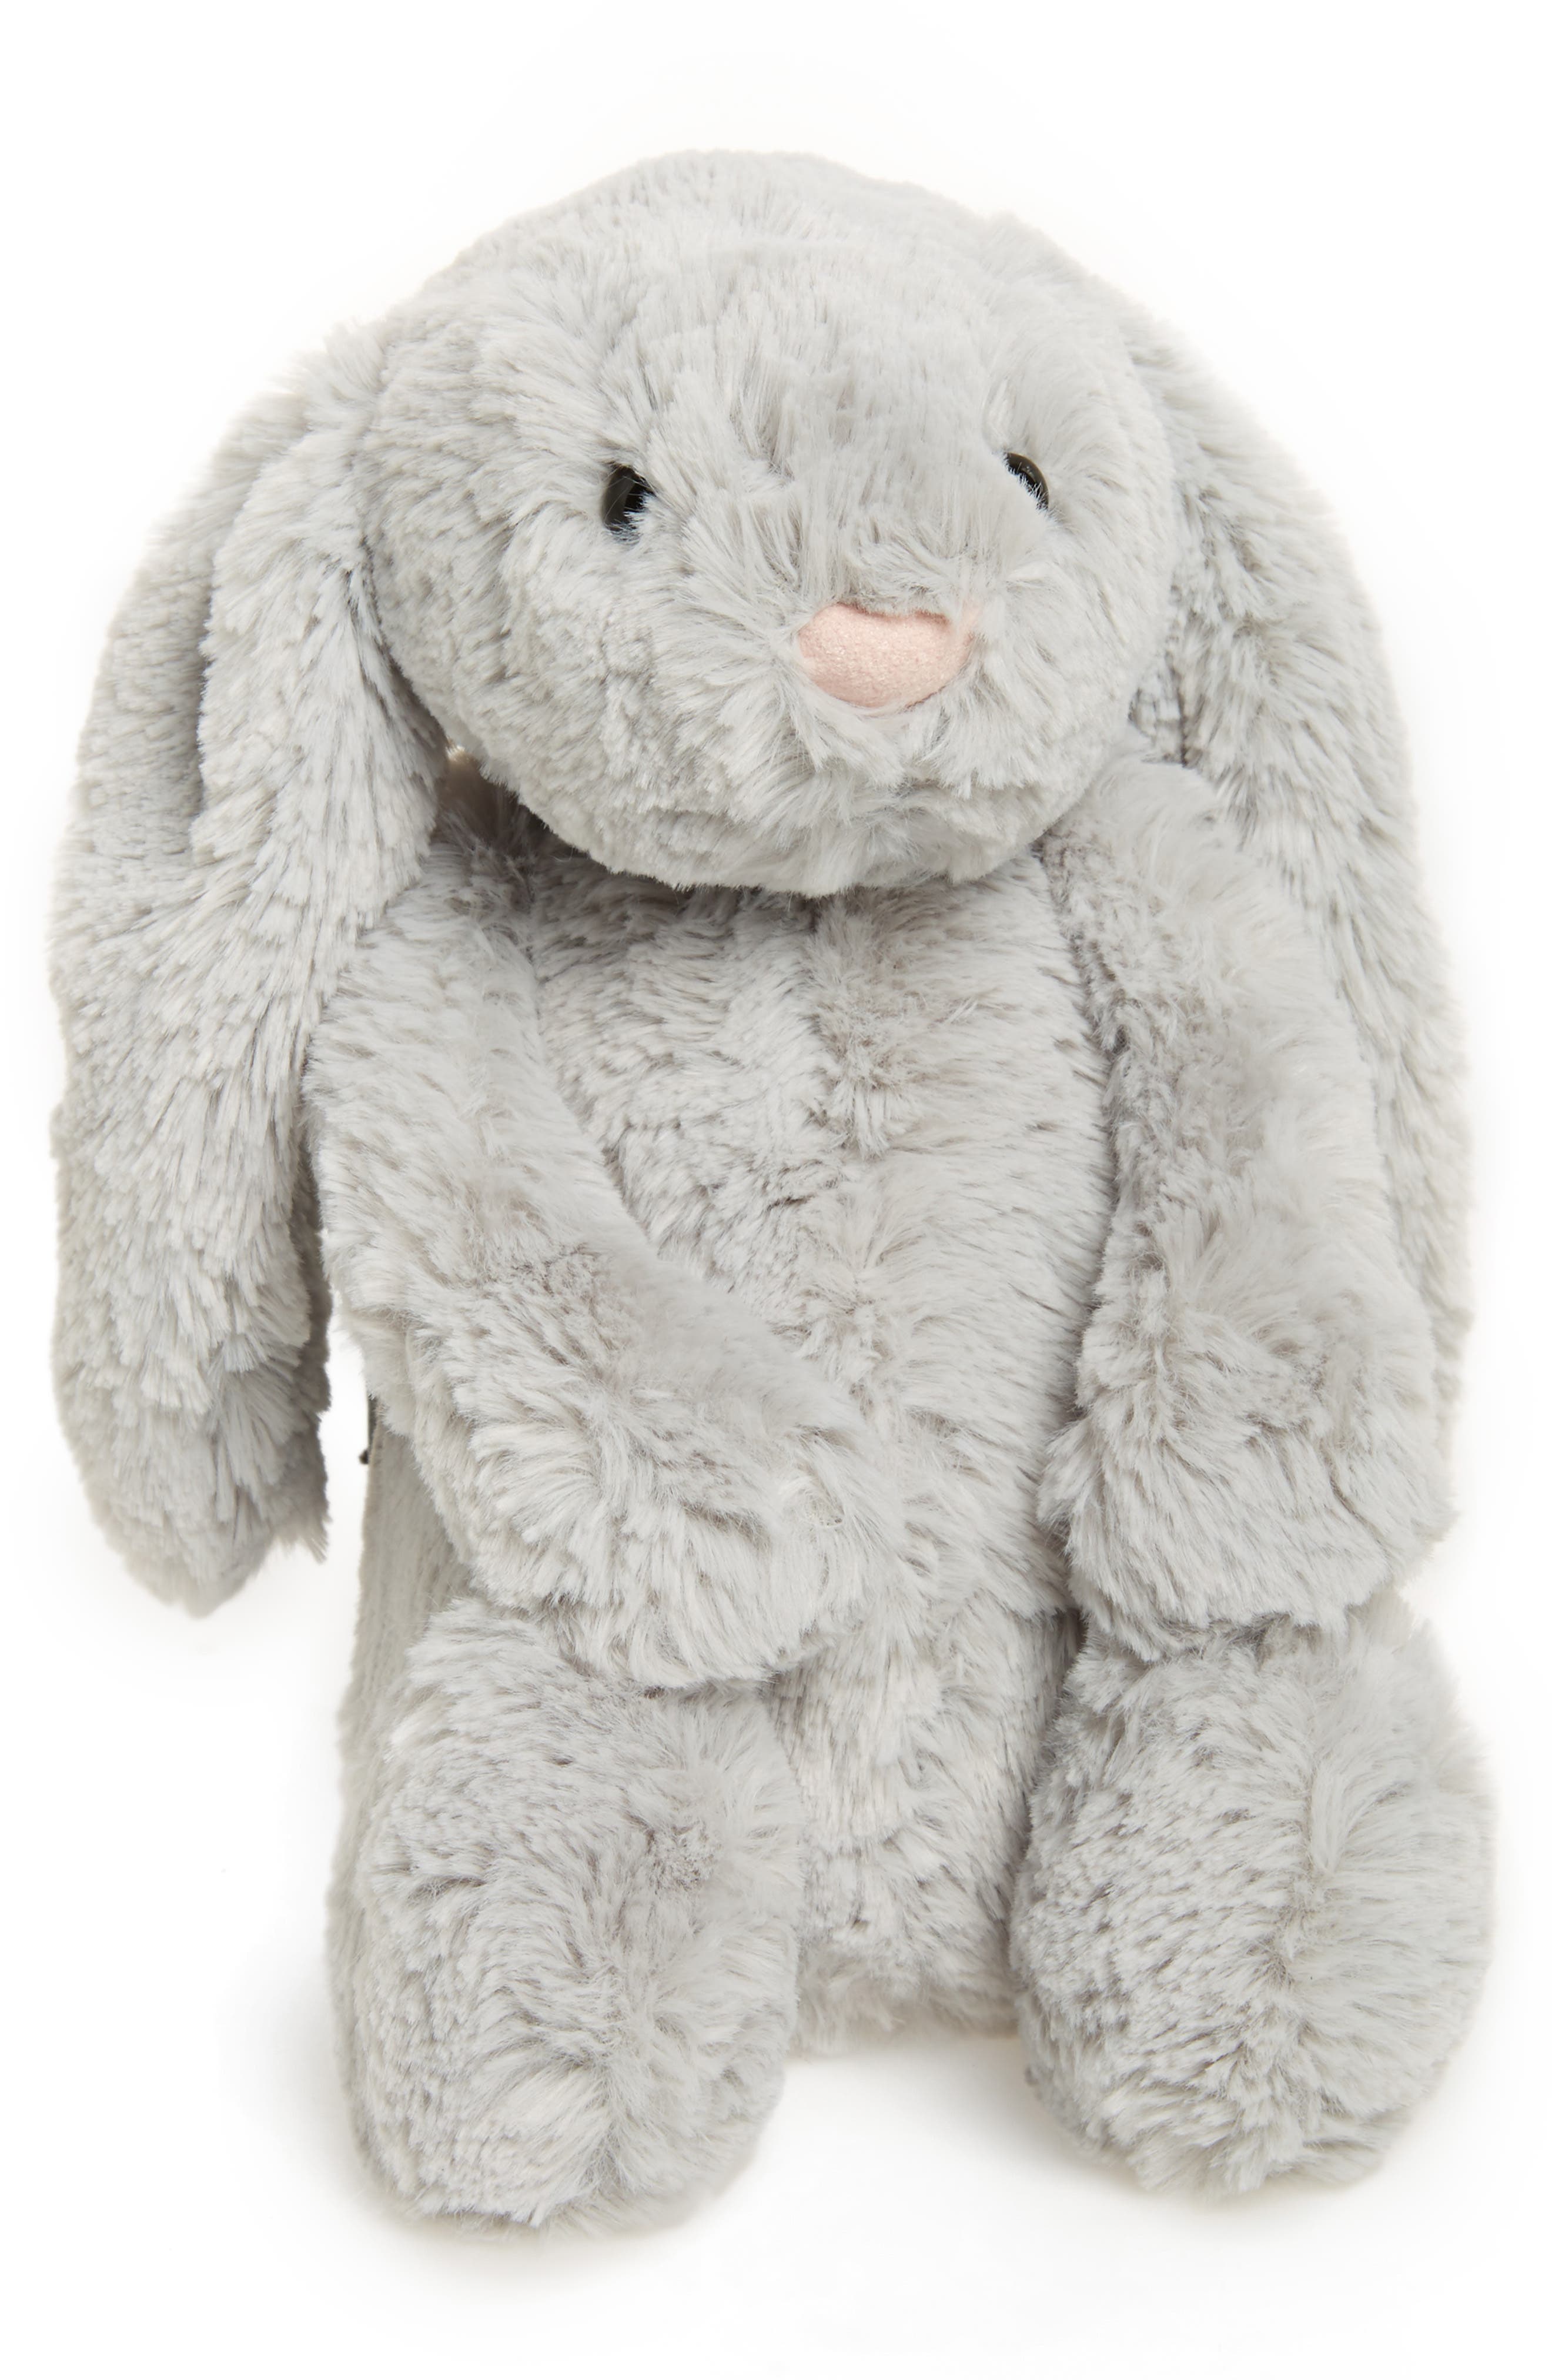 Brand New Jellycat Gray Bashful Bunny Plush Stuffed Animal 12" 